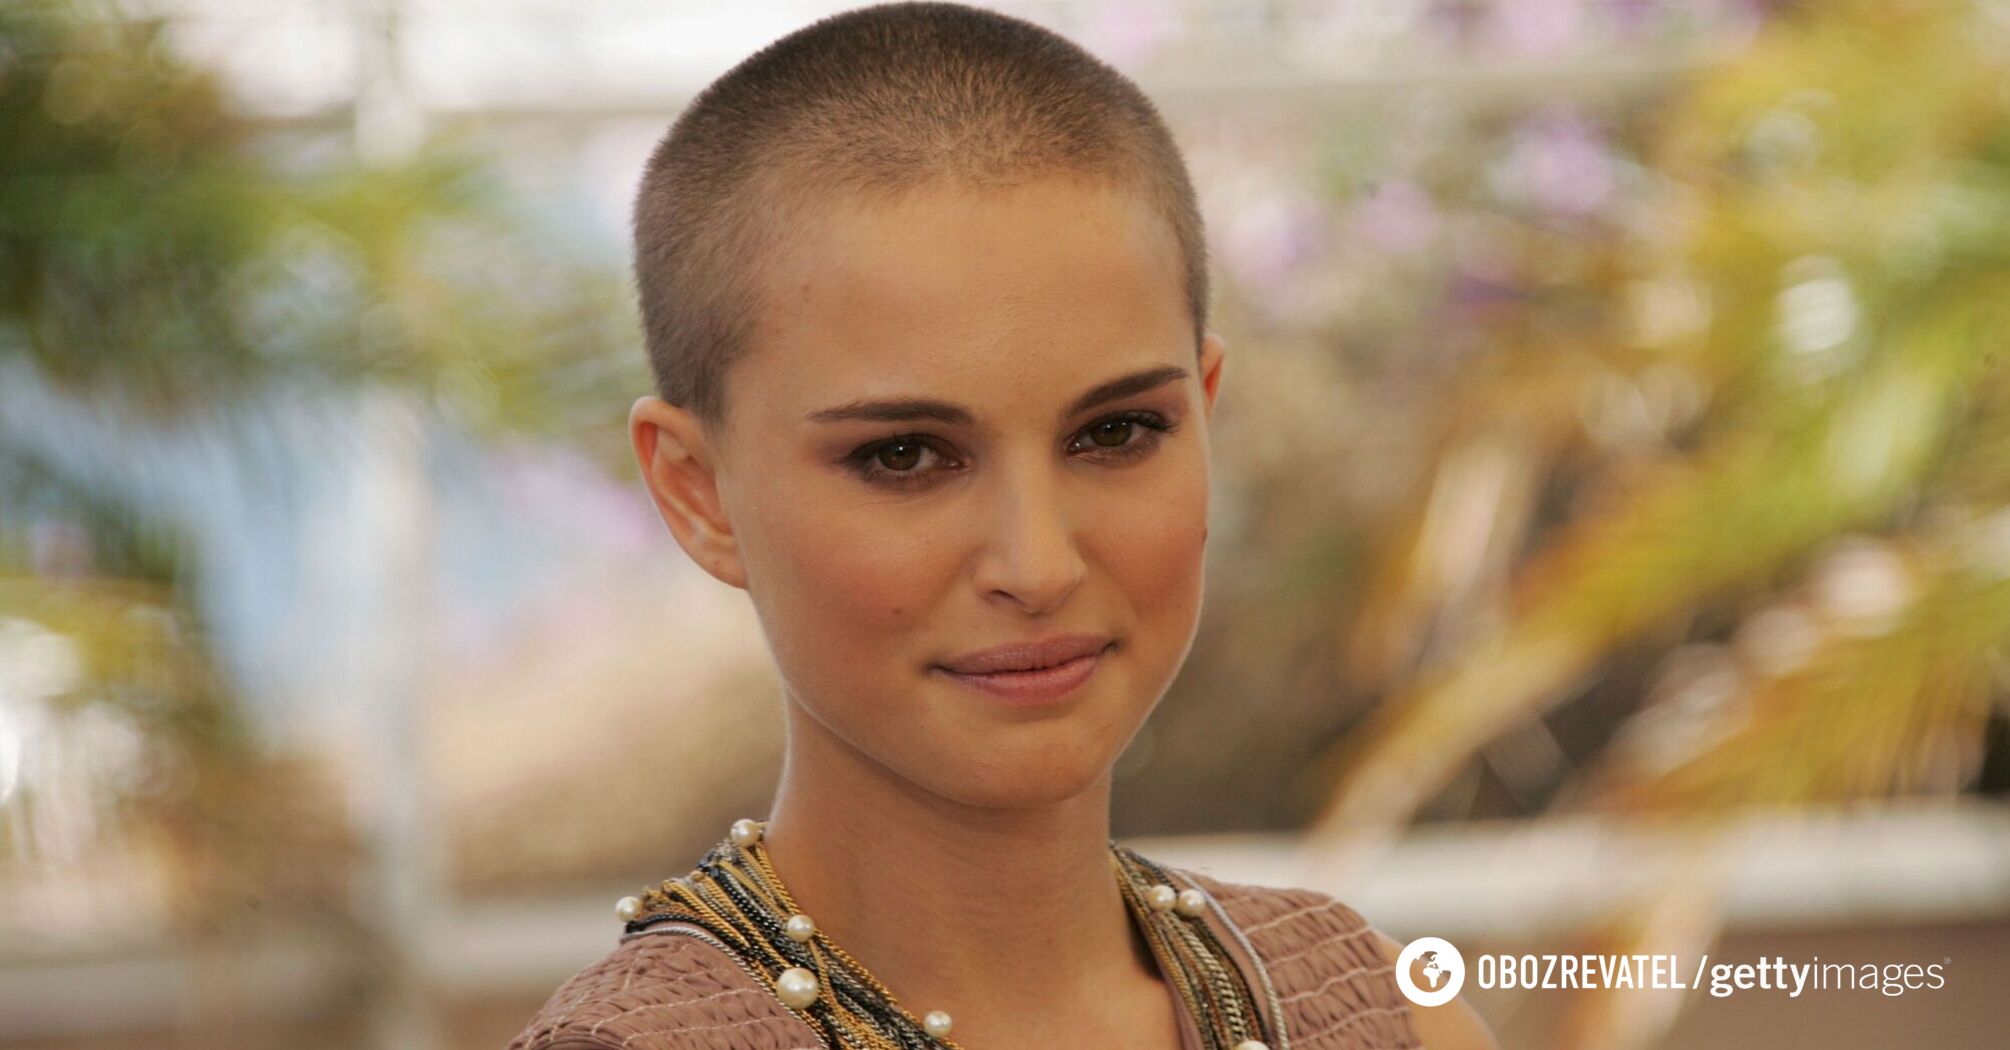 'To trochę wyzwalające'. 10 celebrytów, którzy zachęcają do golenia głowy swoim przykładem